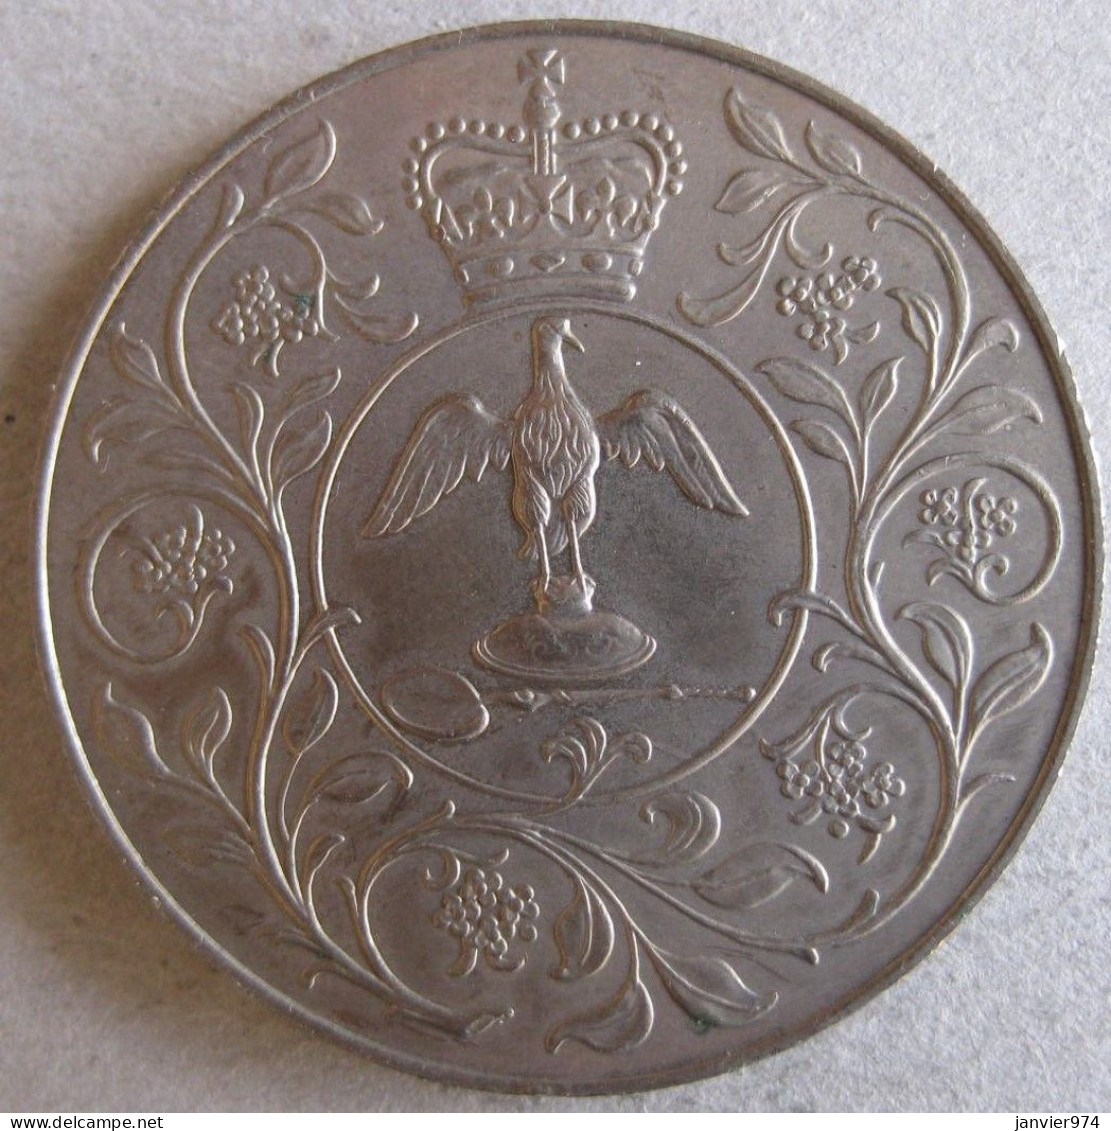 Royaume Unie Médaille Elizabeth II 1977, Pour Son Jubilé D'argent De Règne , En Cupro Nickel. - Royal/Of Nobility